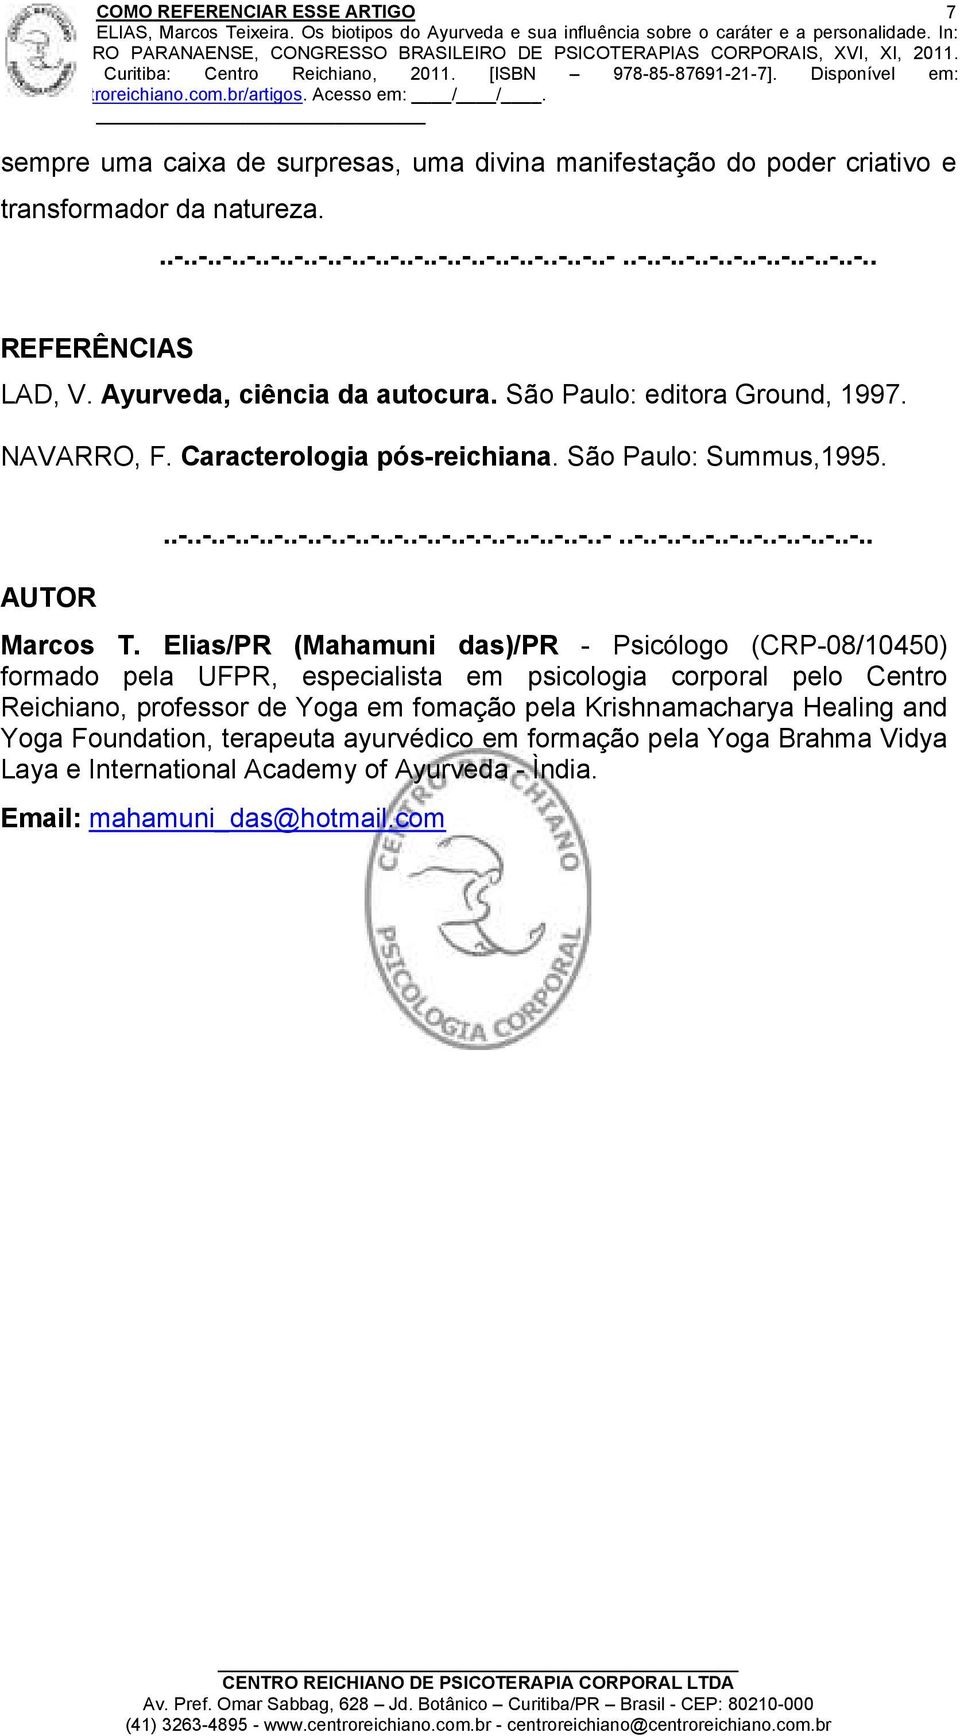 Elias/PR (Mahamuni das)/pr - Psicólogo (CRP-08/10450) formado pela UFPR, especialista em psicologia corporal pelo Centro Reichiano, professor de Yoga em fomação pela Krishnamacharya Healing and Yoga